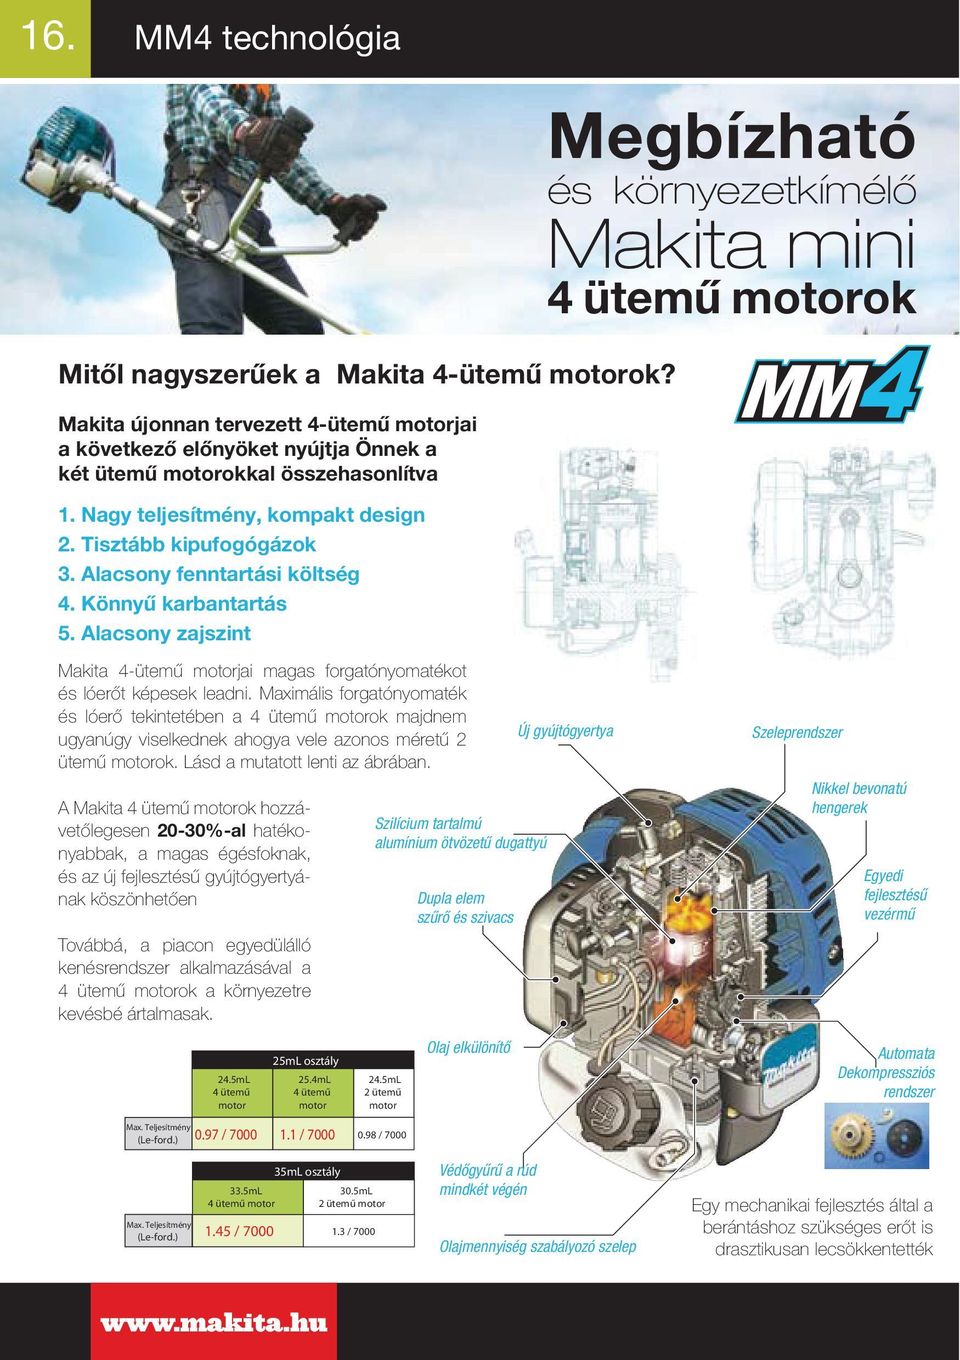 Alacsony zajszint Megbízható és környezetkímélő Makita mini 4 ütemű motorok Makita 4-ütemű motorjai magas forgatónyomatékot és lóerőt képesek leadni.